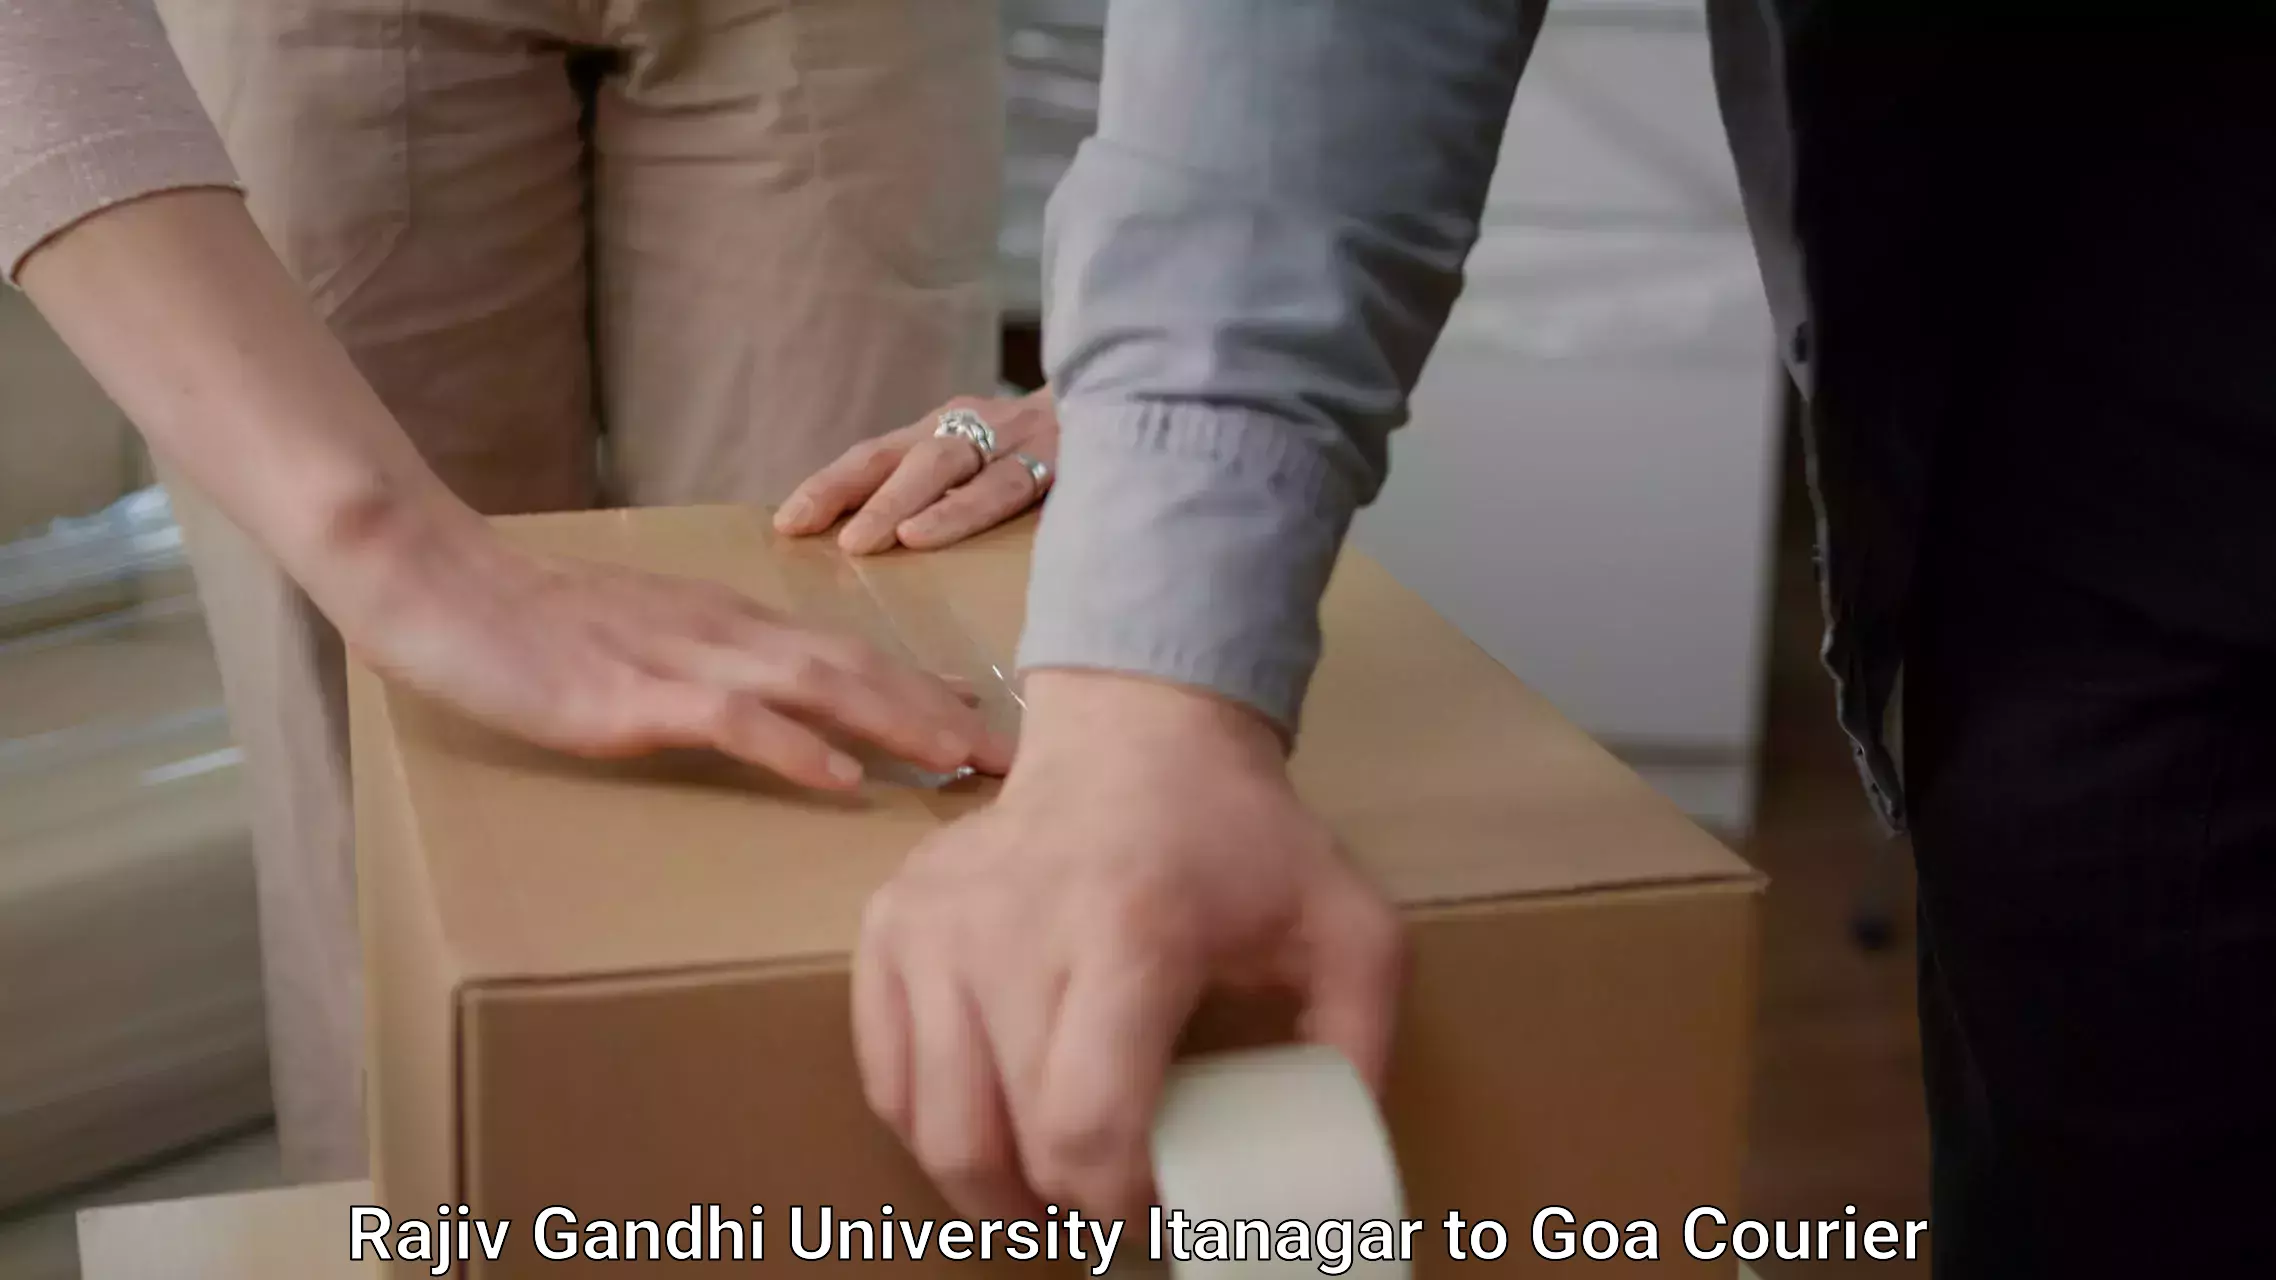 Furniture moving service Rajiv Gandhi University Itanagar to Margao